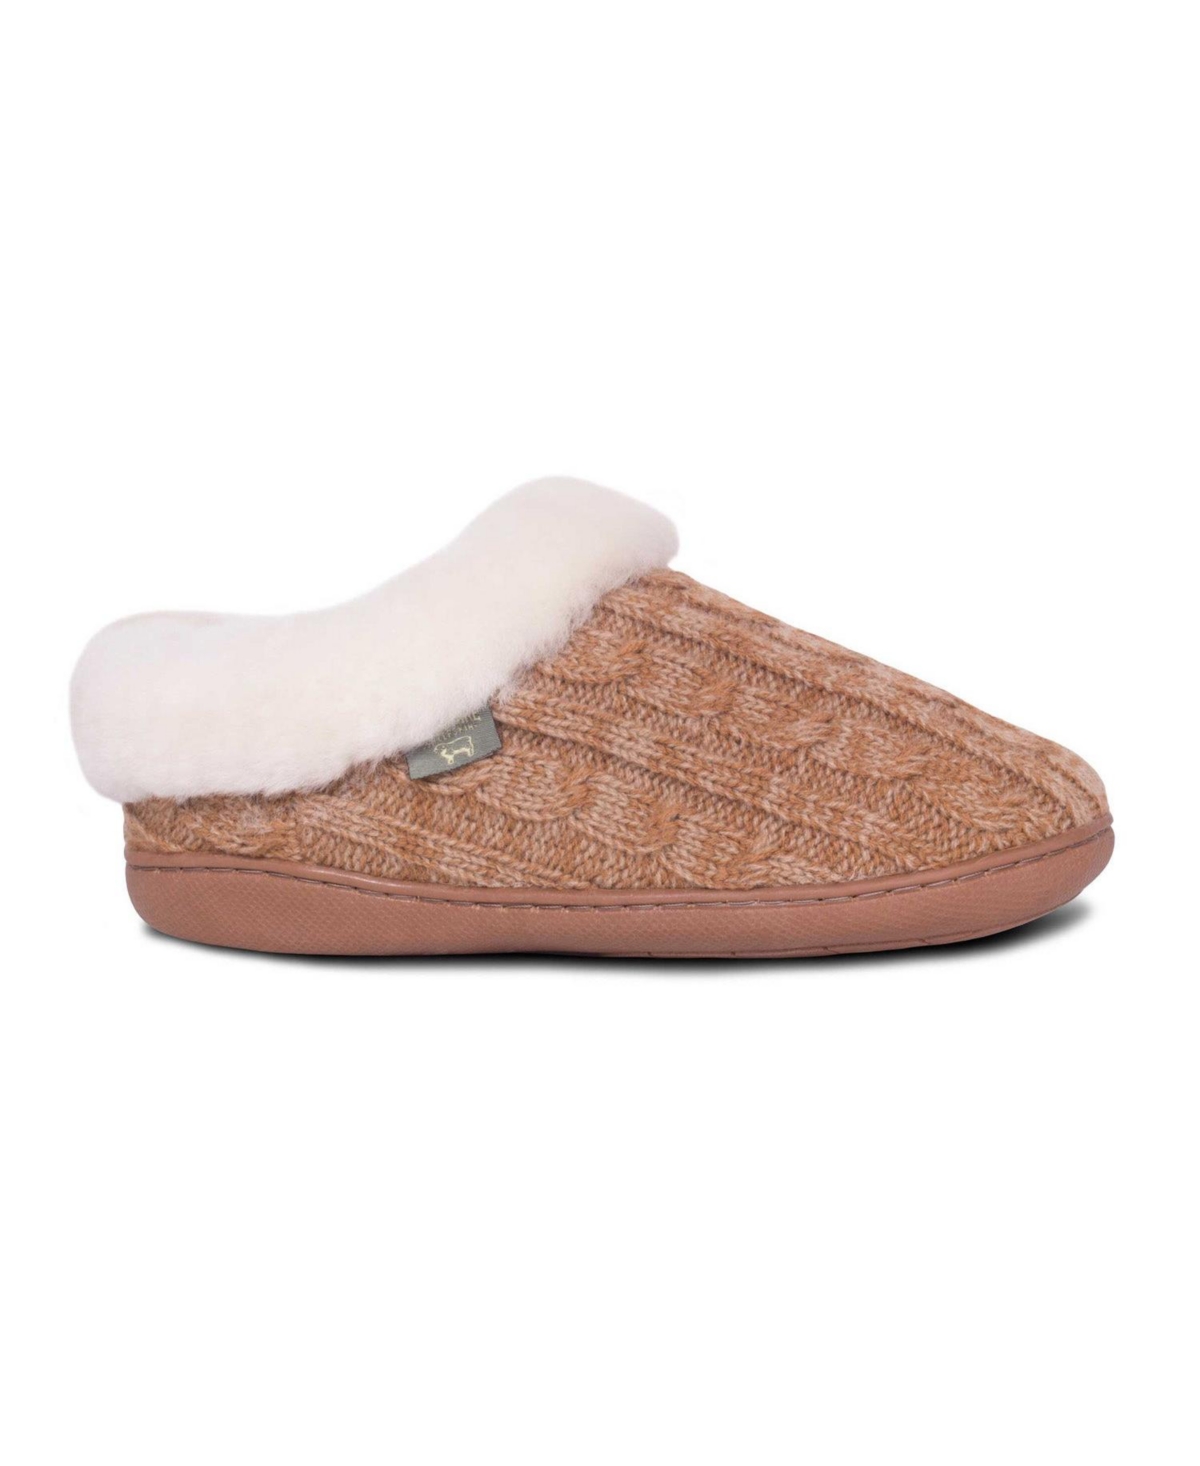 Ladies Crochet Clog Slide Slippers - Chestnut